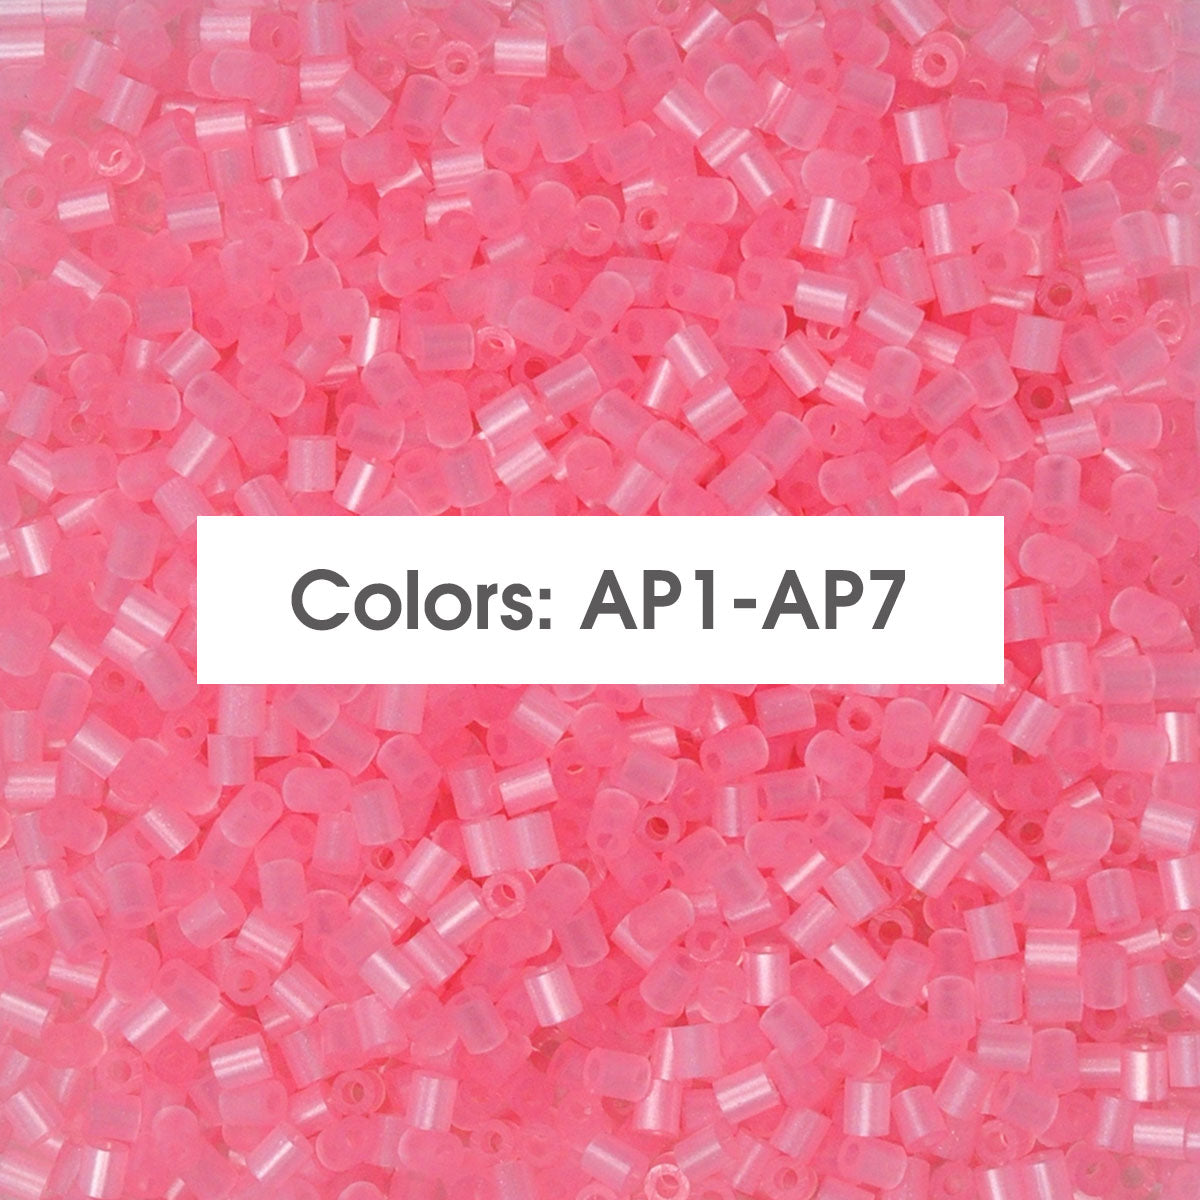 (AP1-AP7 Colores perlados) A-500G a granel